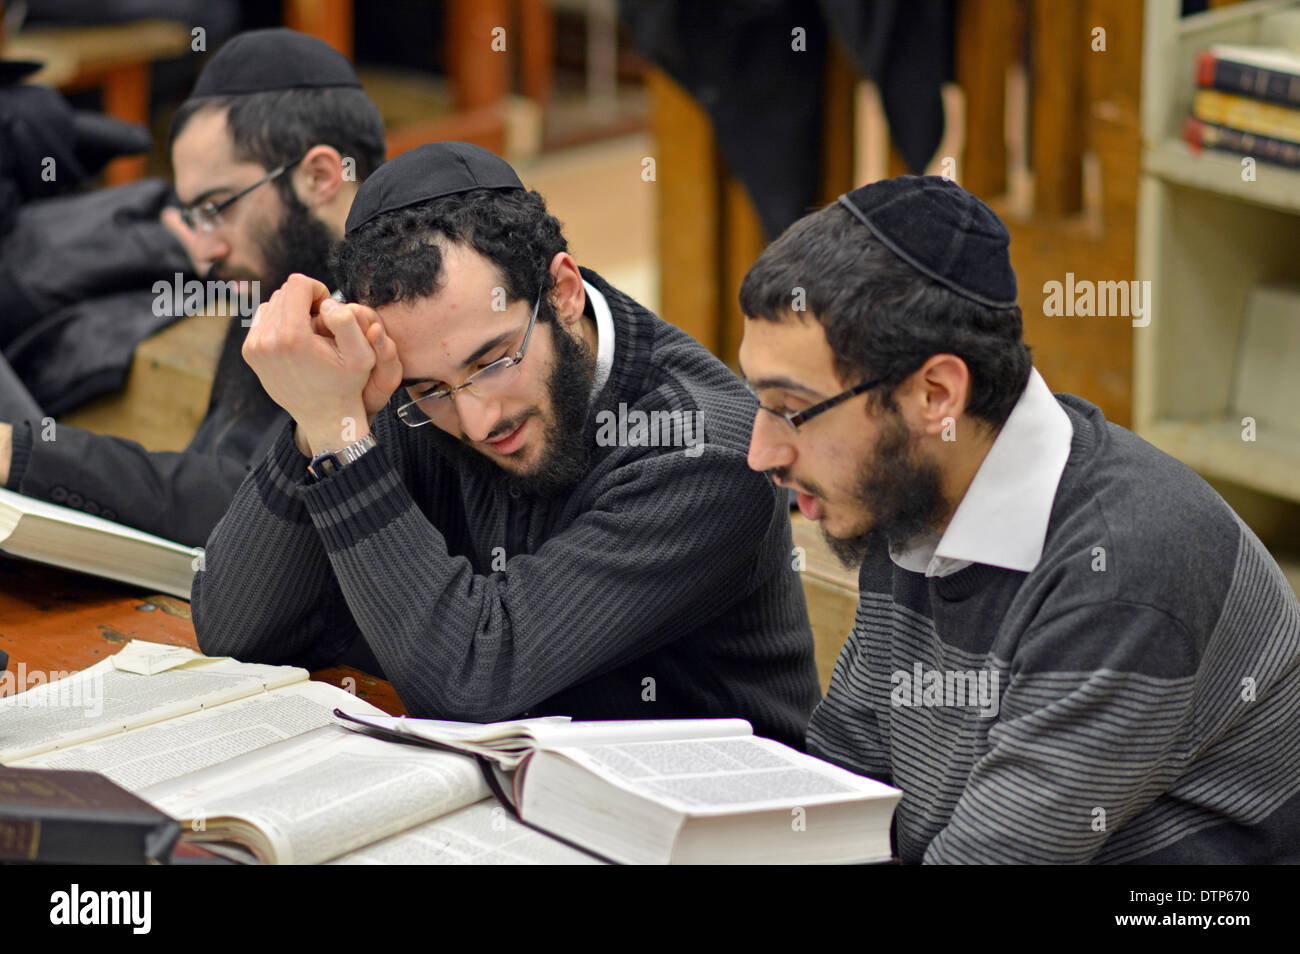 CHAVRUSA. Gli studenti di Lubavitch Hassidic studiano Talmud presso la loro sede e sinagoga al 770 Eastern Parkway di Brooklyn, New York. Foto Stock